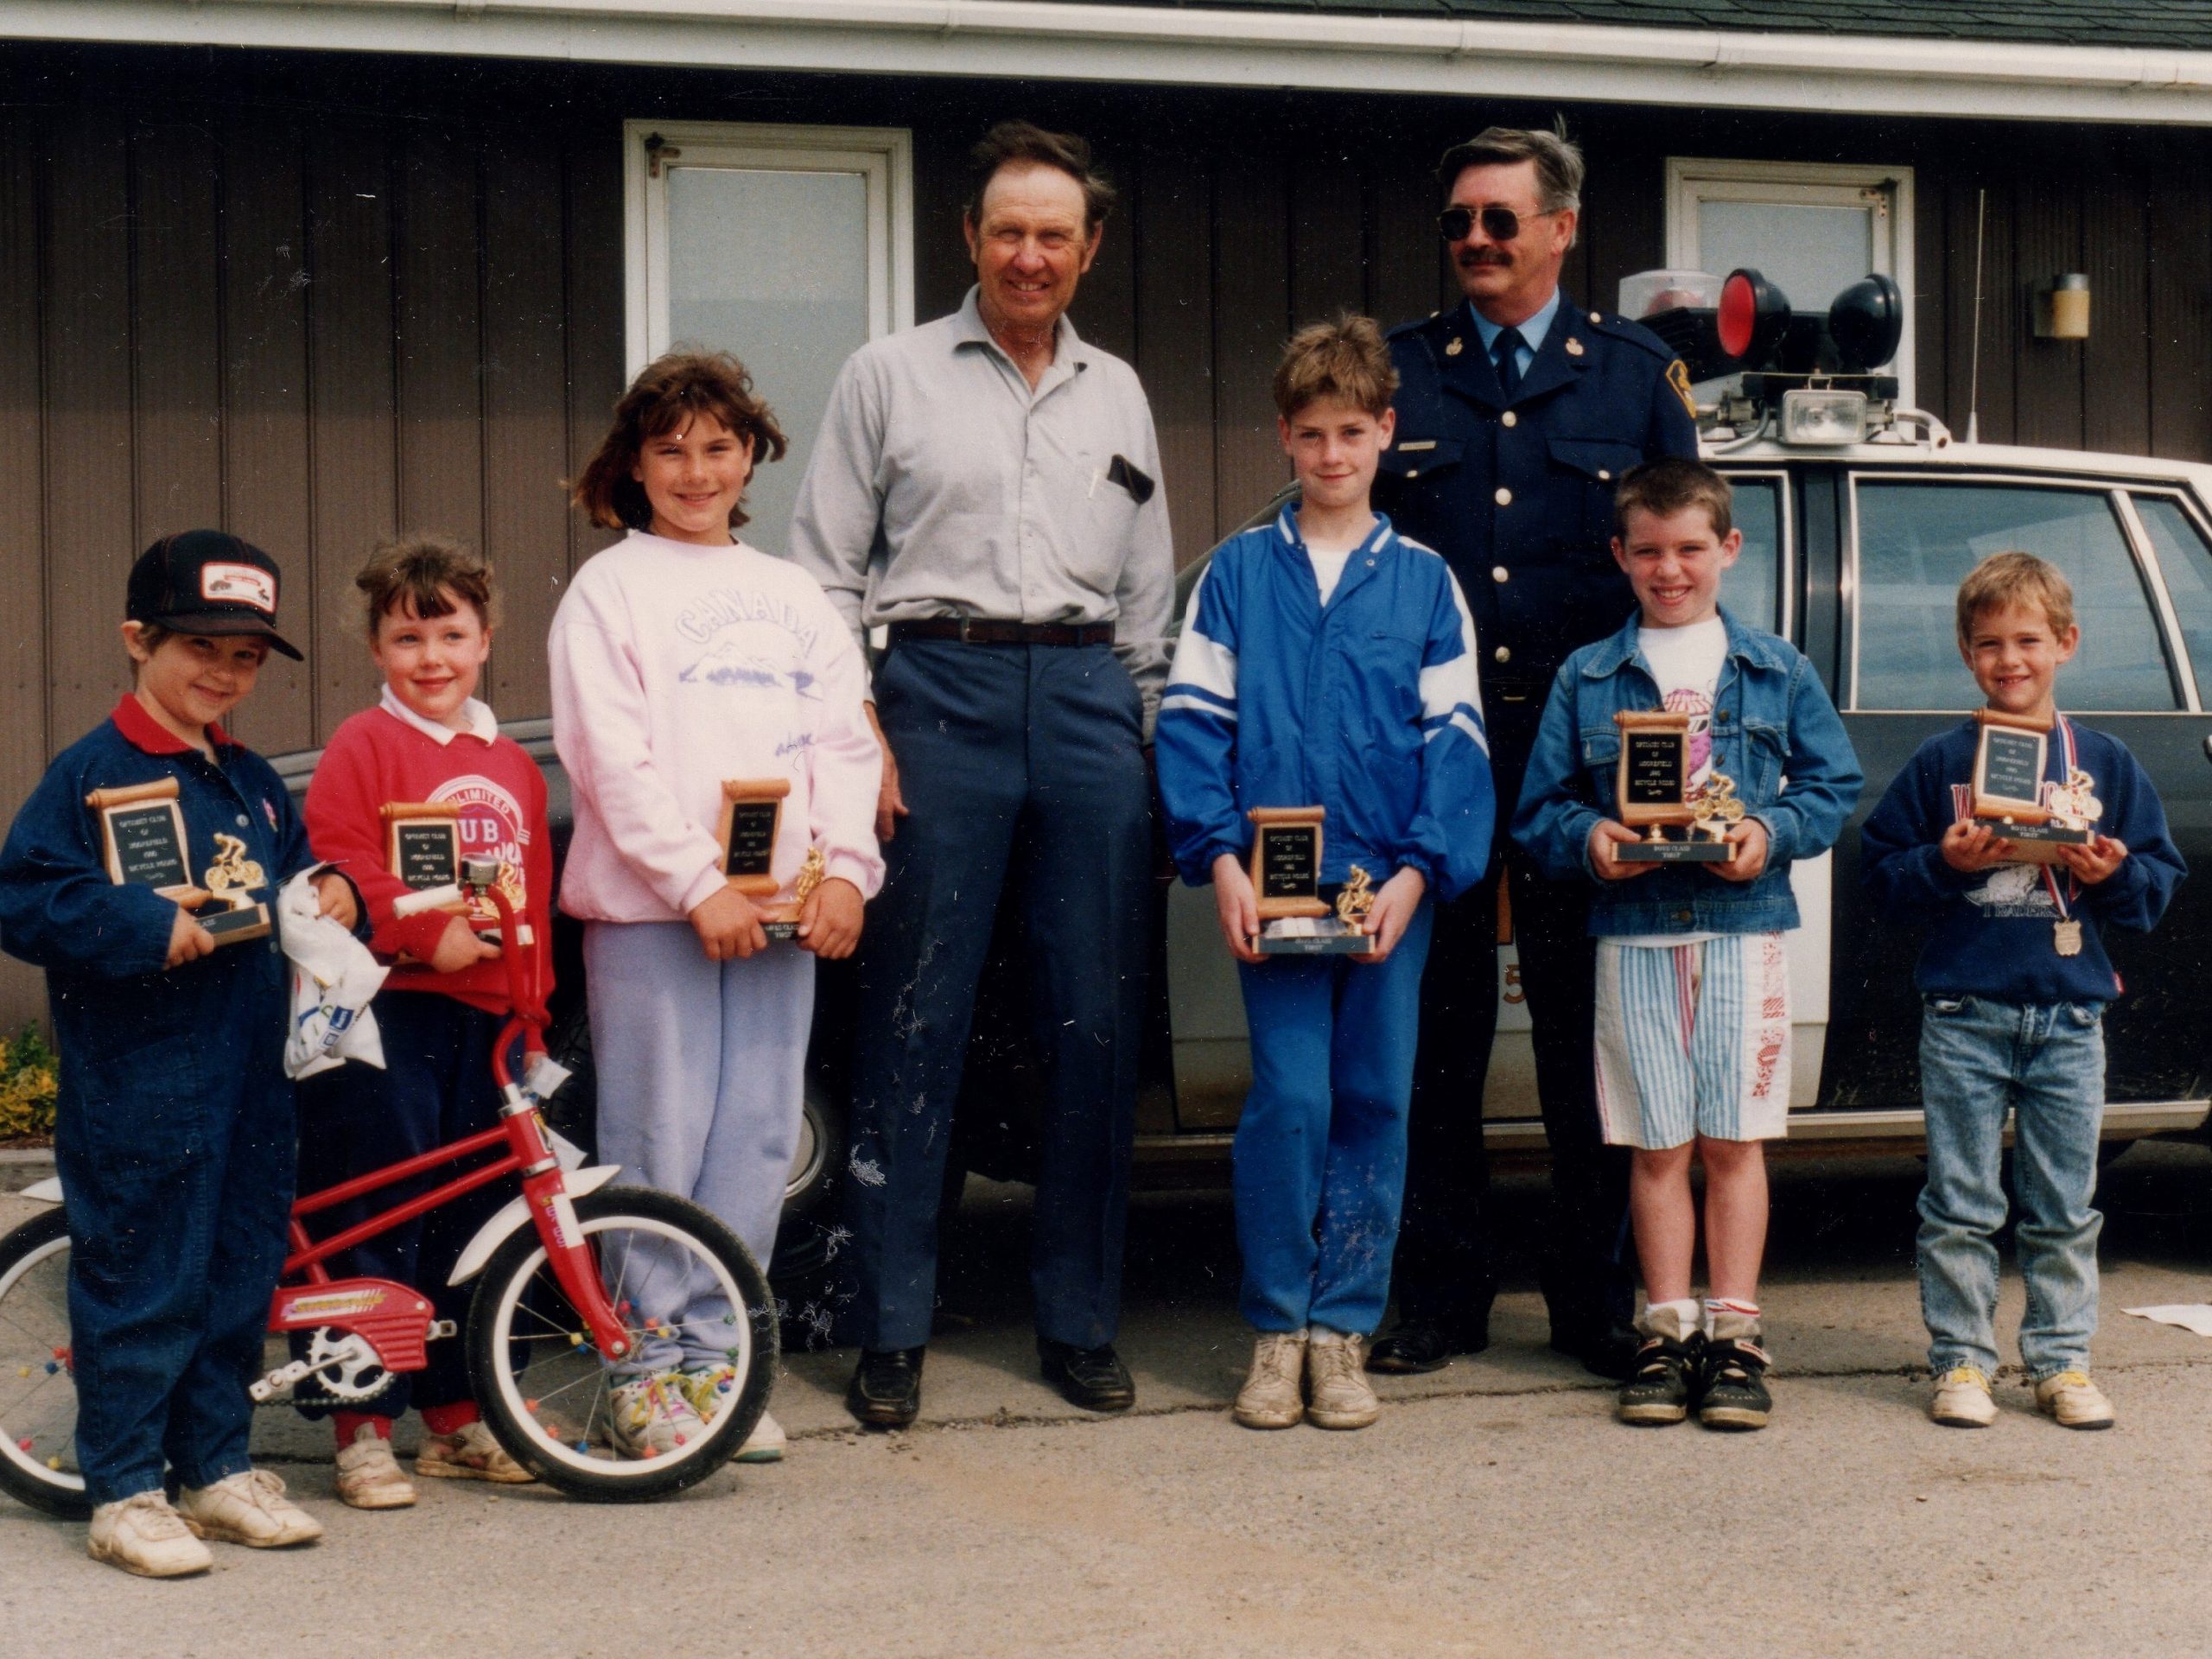 1990 Bike Rodeo - the winners